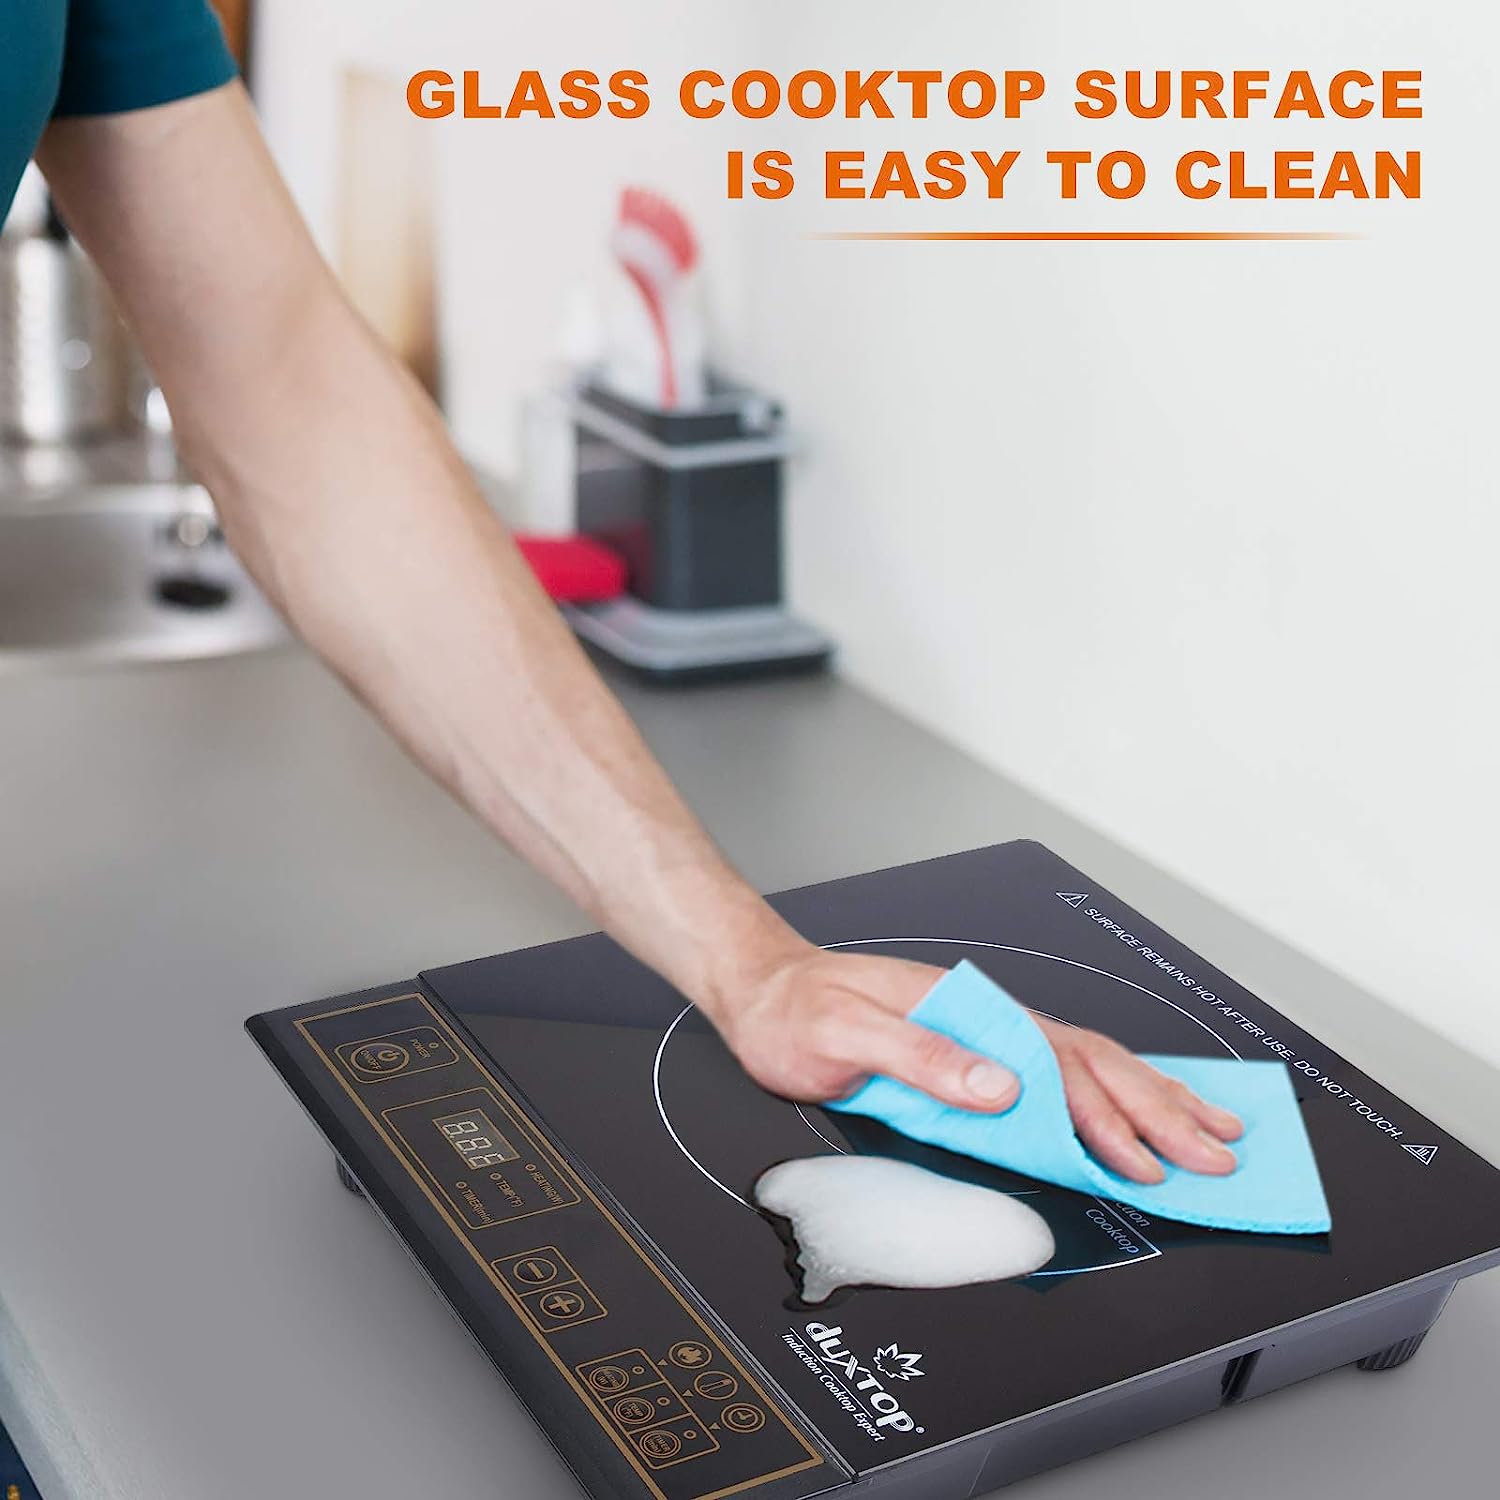  Duxtop Portable Induction Cooktop, Countertop